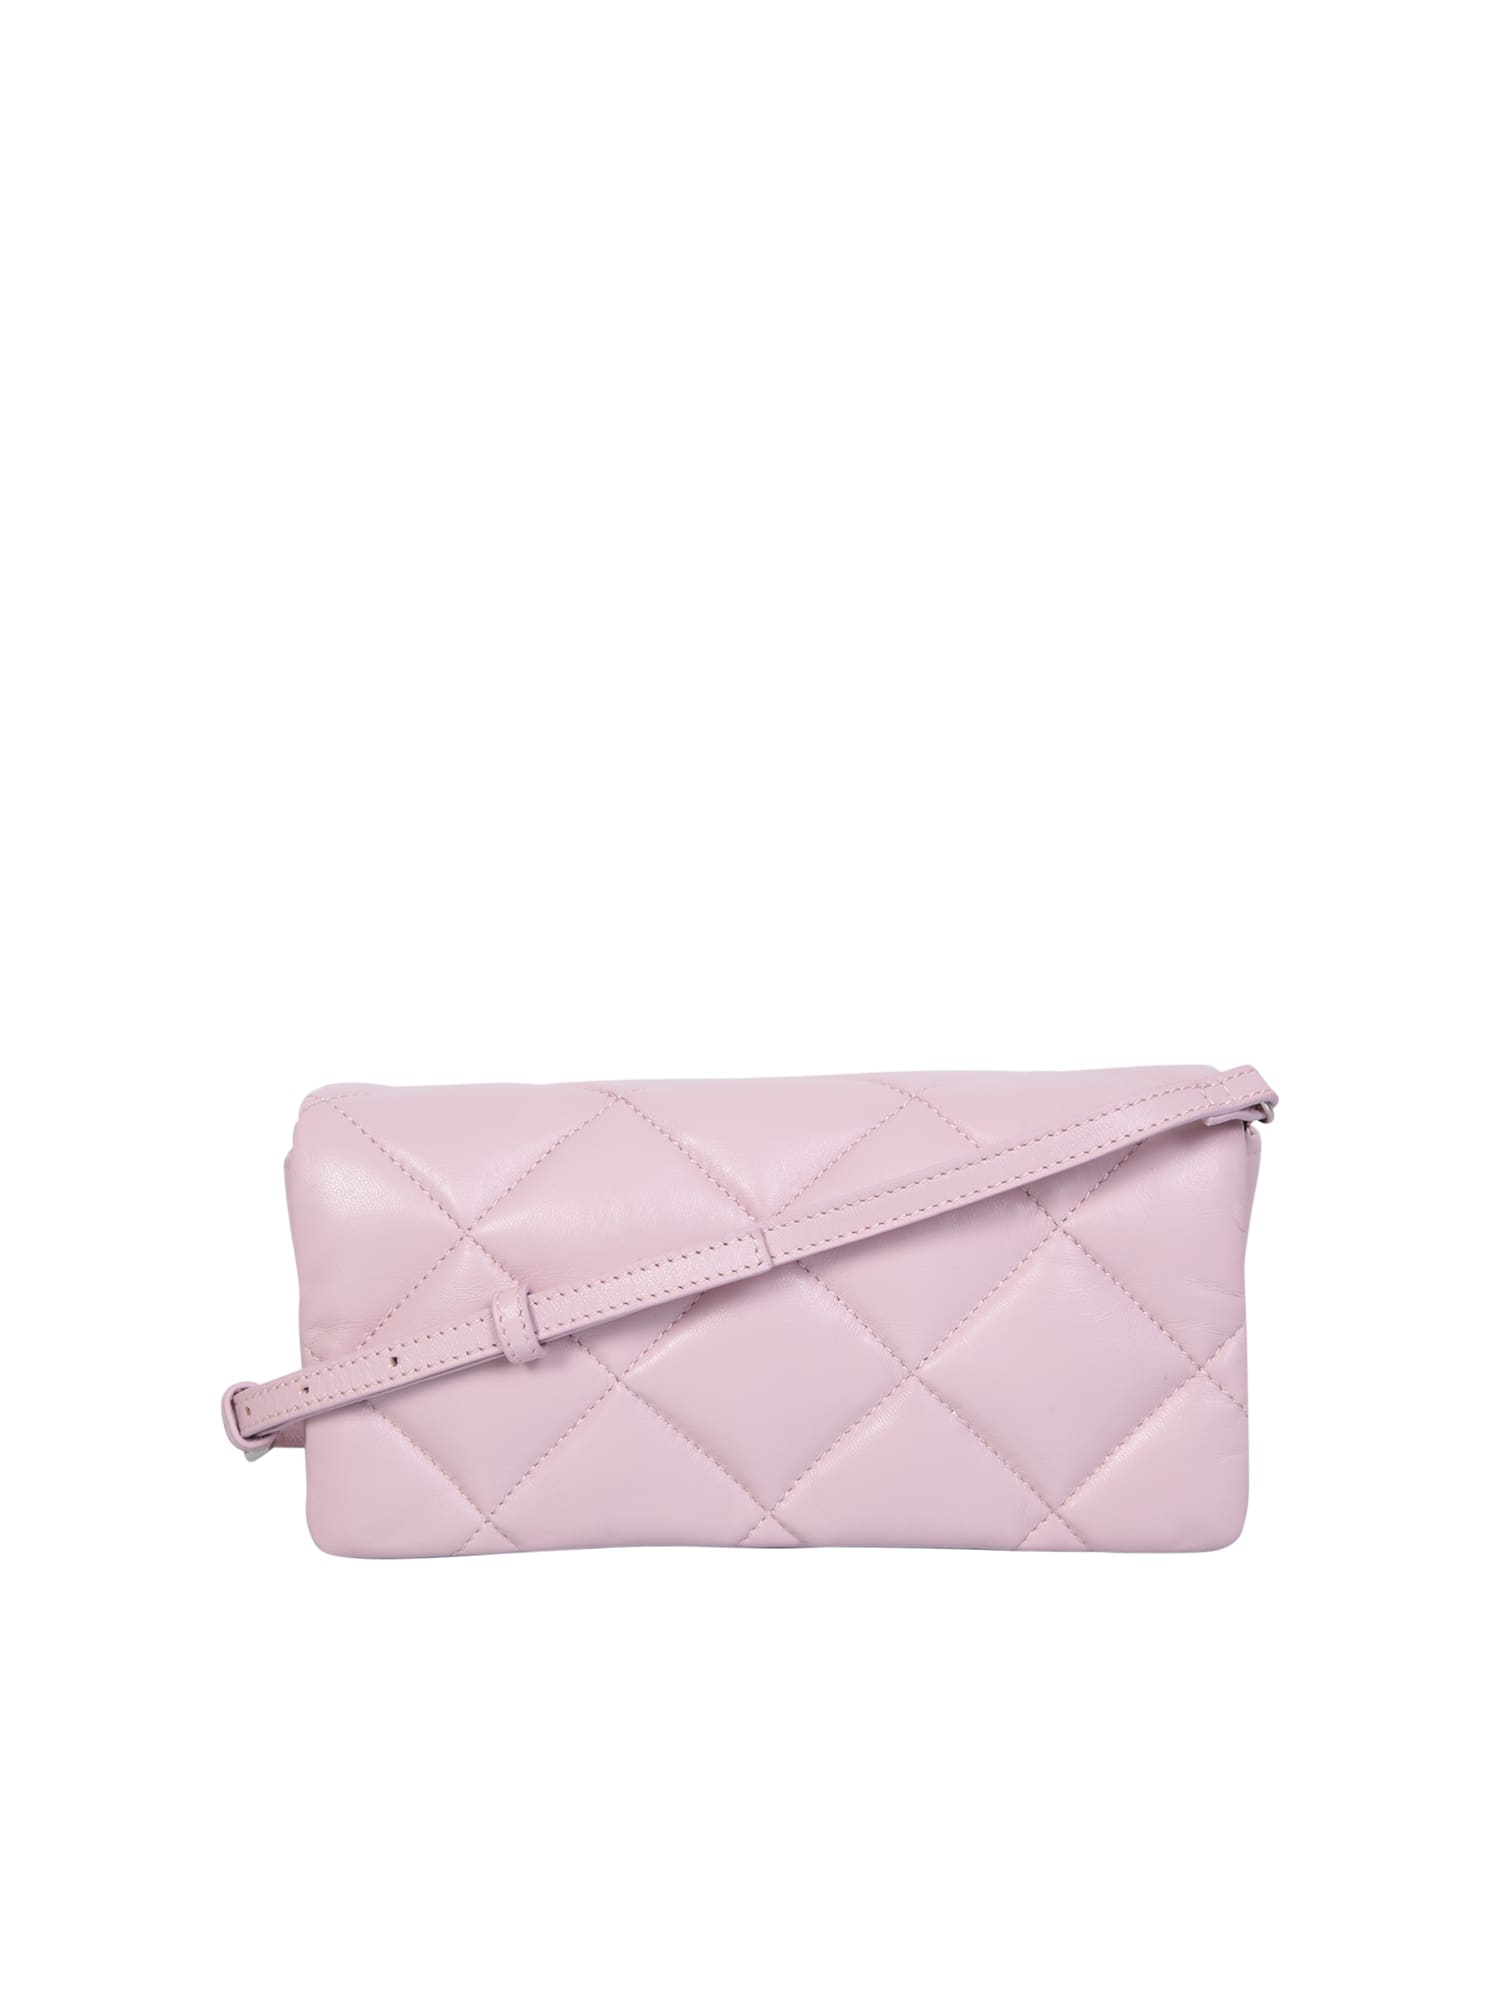 Hera Pink Bag